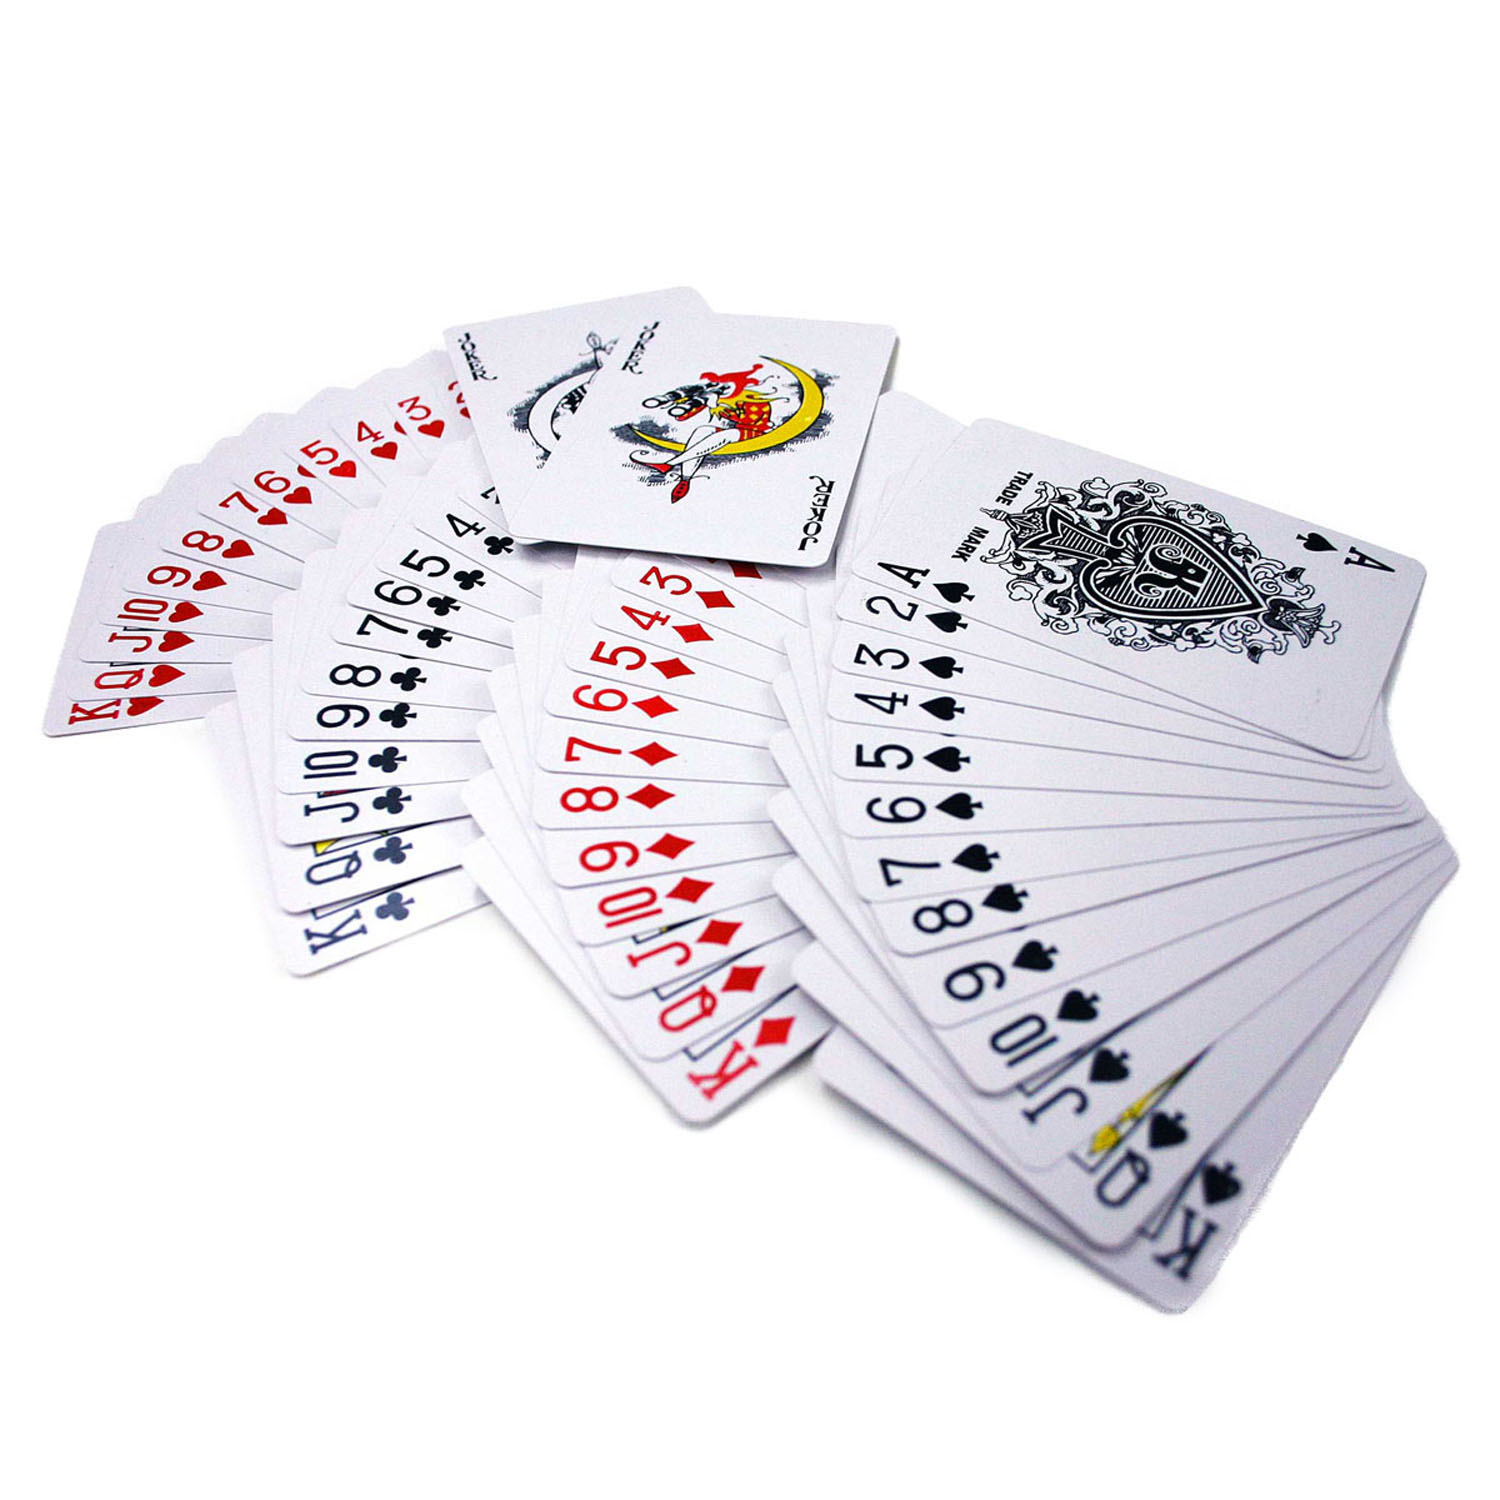 52 игральных карты. Колода 52. Игральные карты 52 карты. Колода карт из 52 карт. Игральная колода 52 карты.